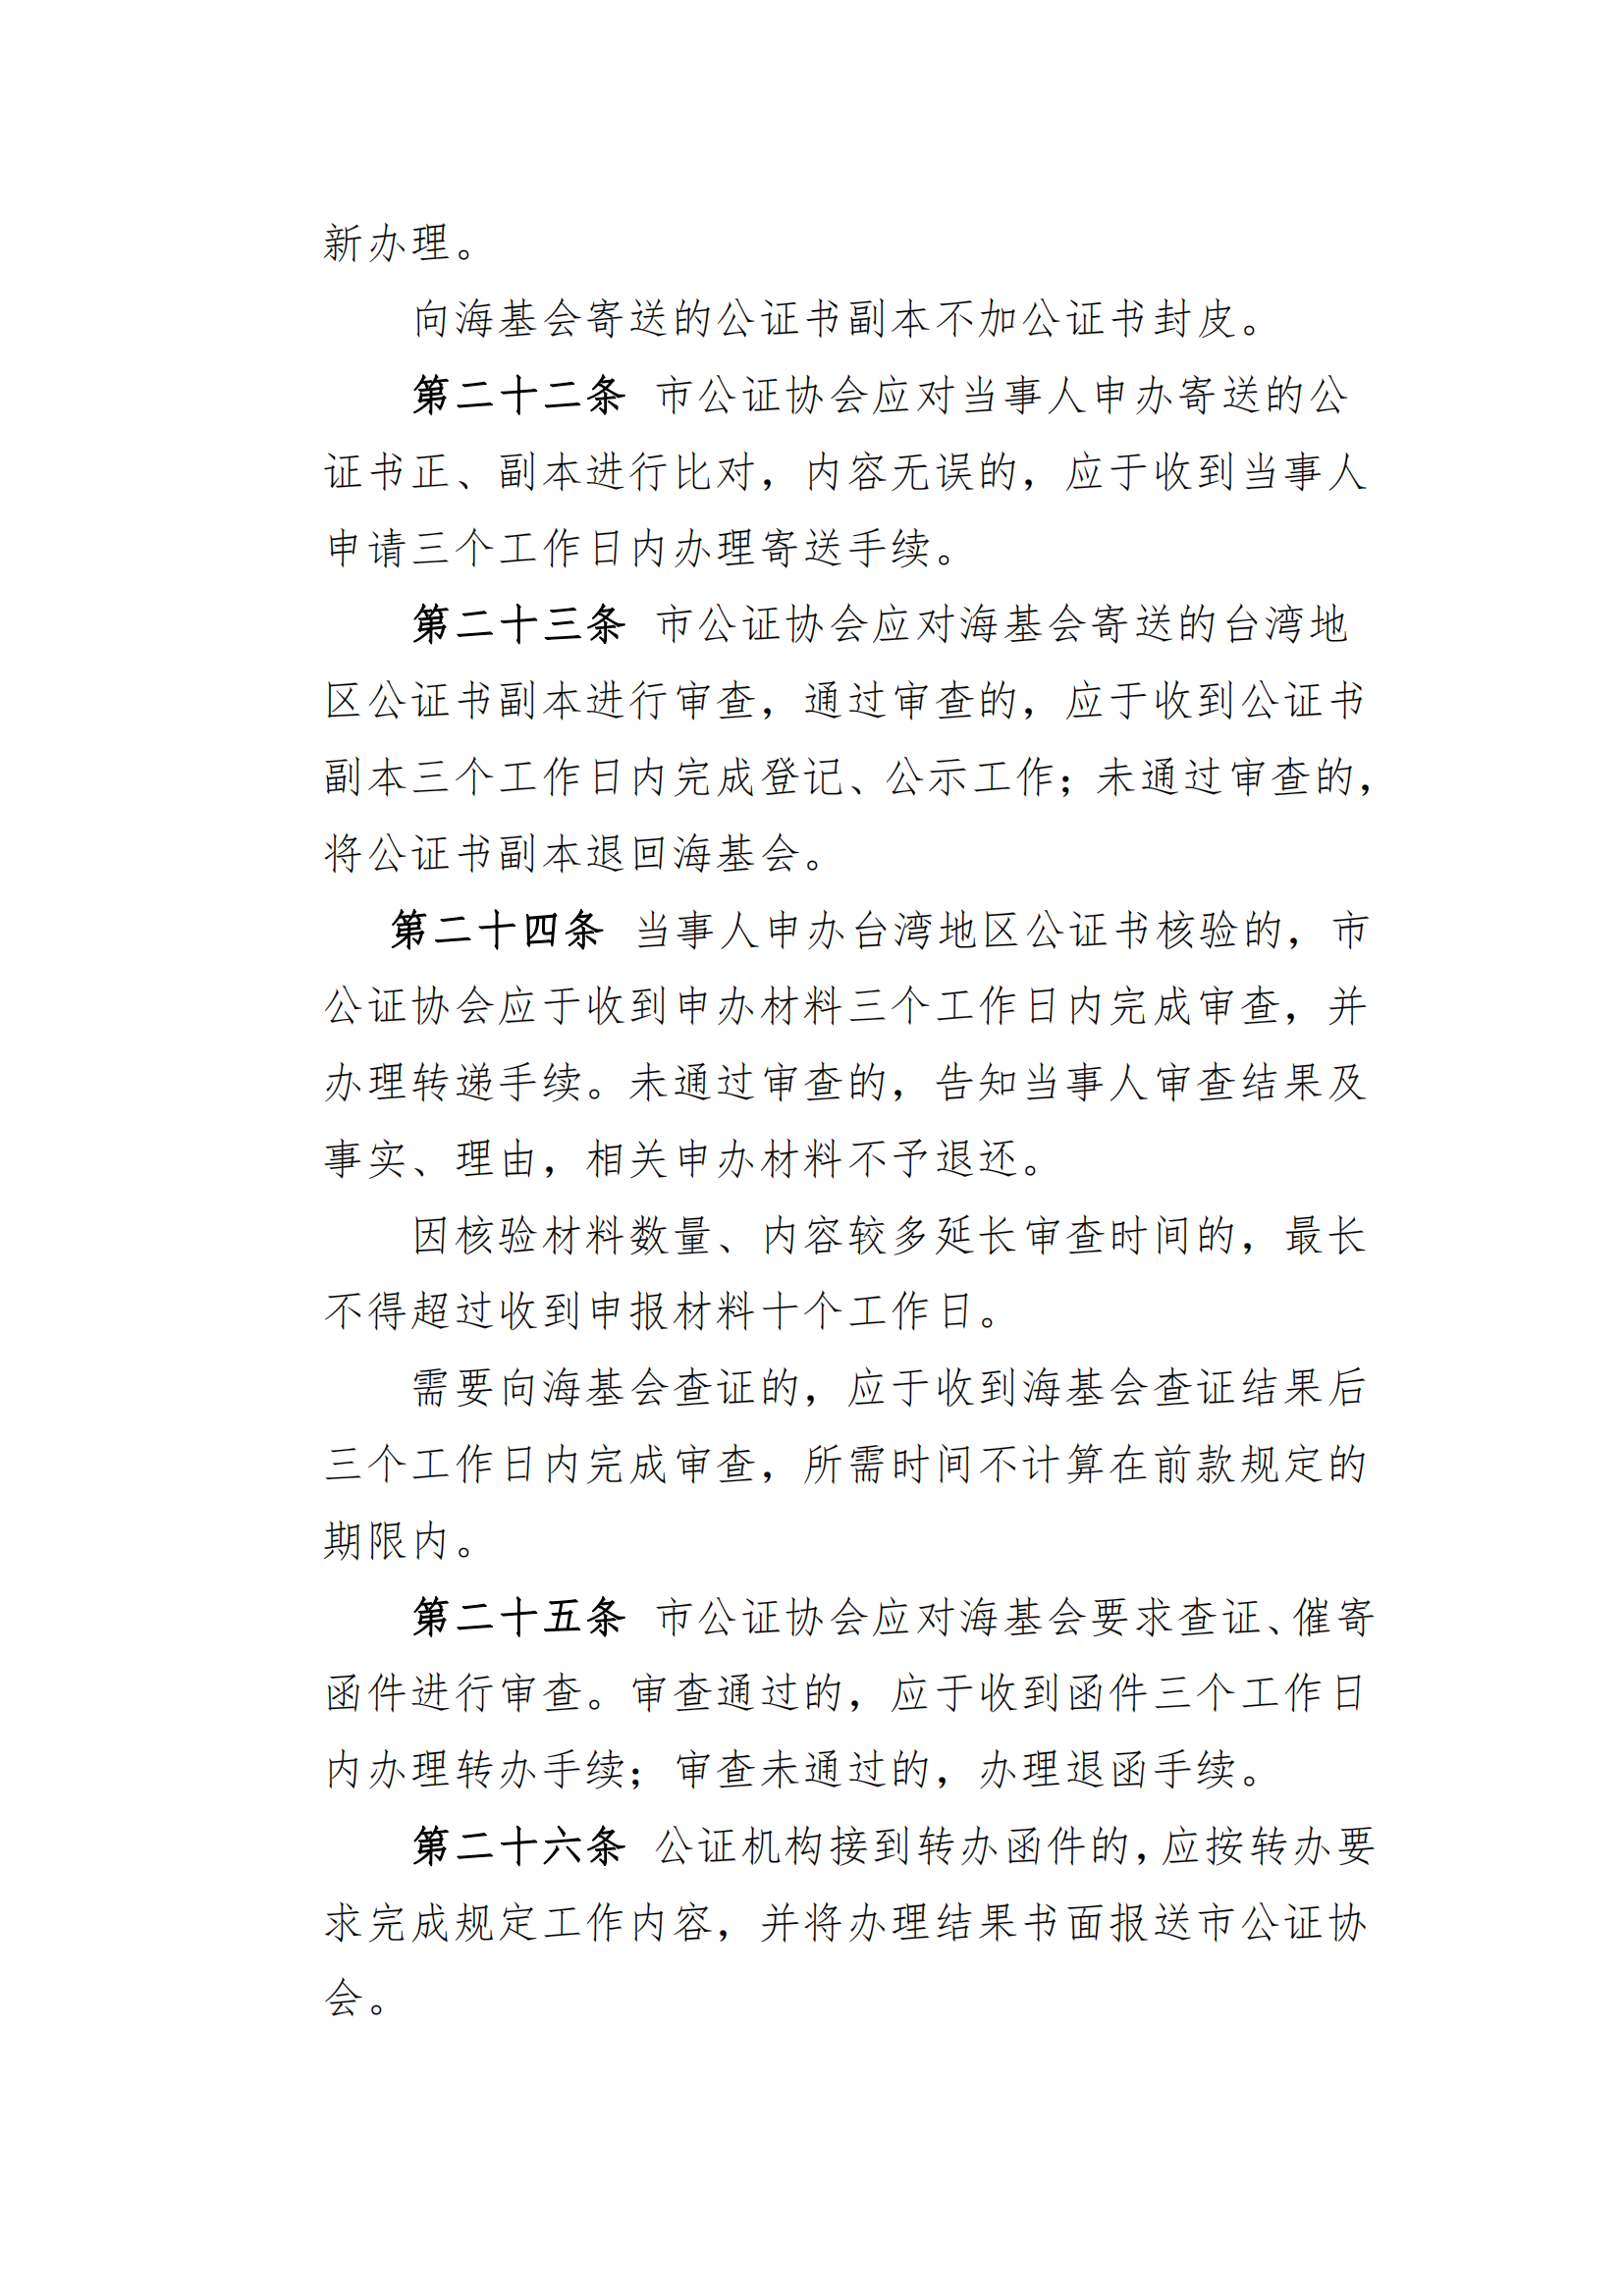 6北京市公证协会涉台公证业务管理办法_04